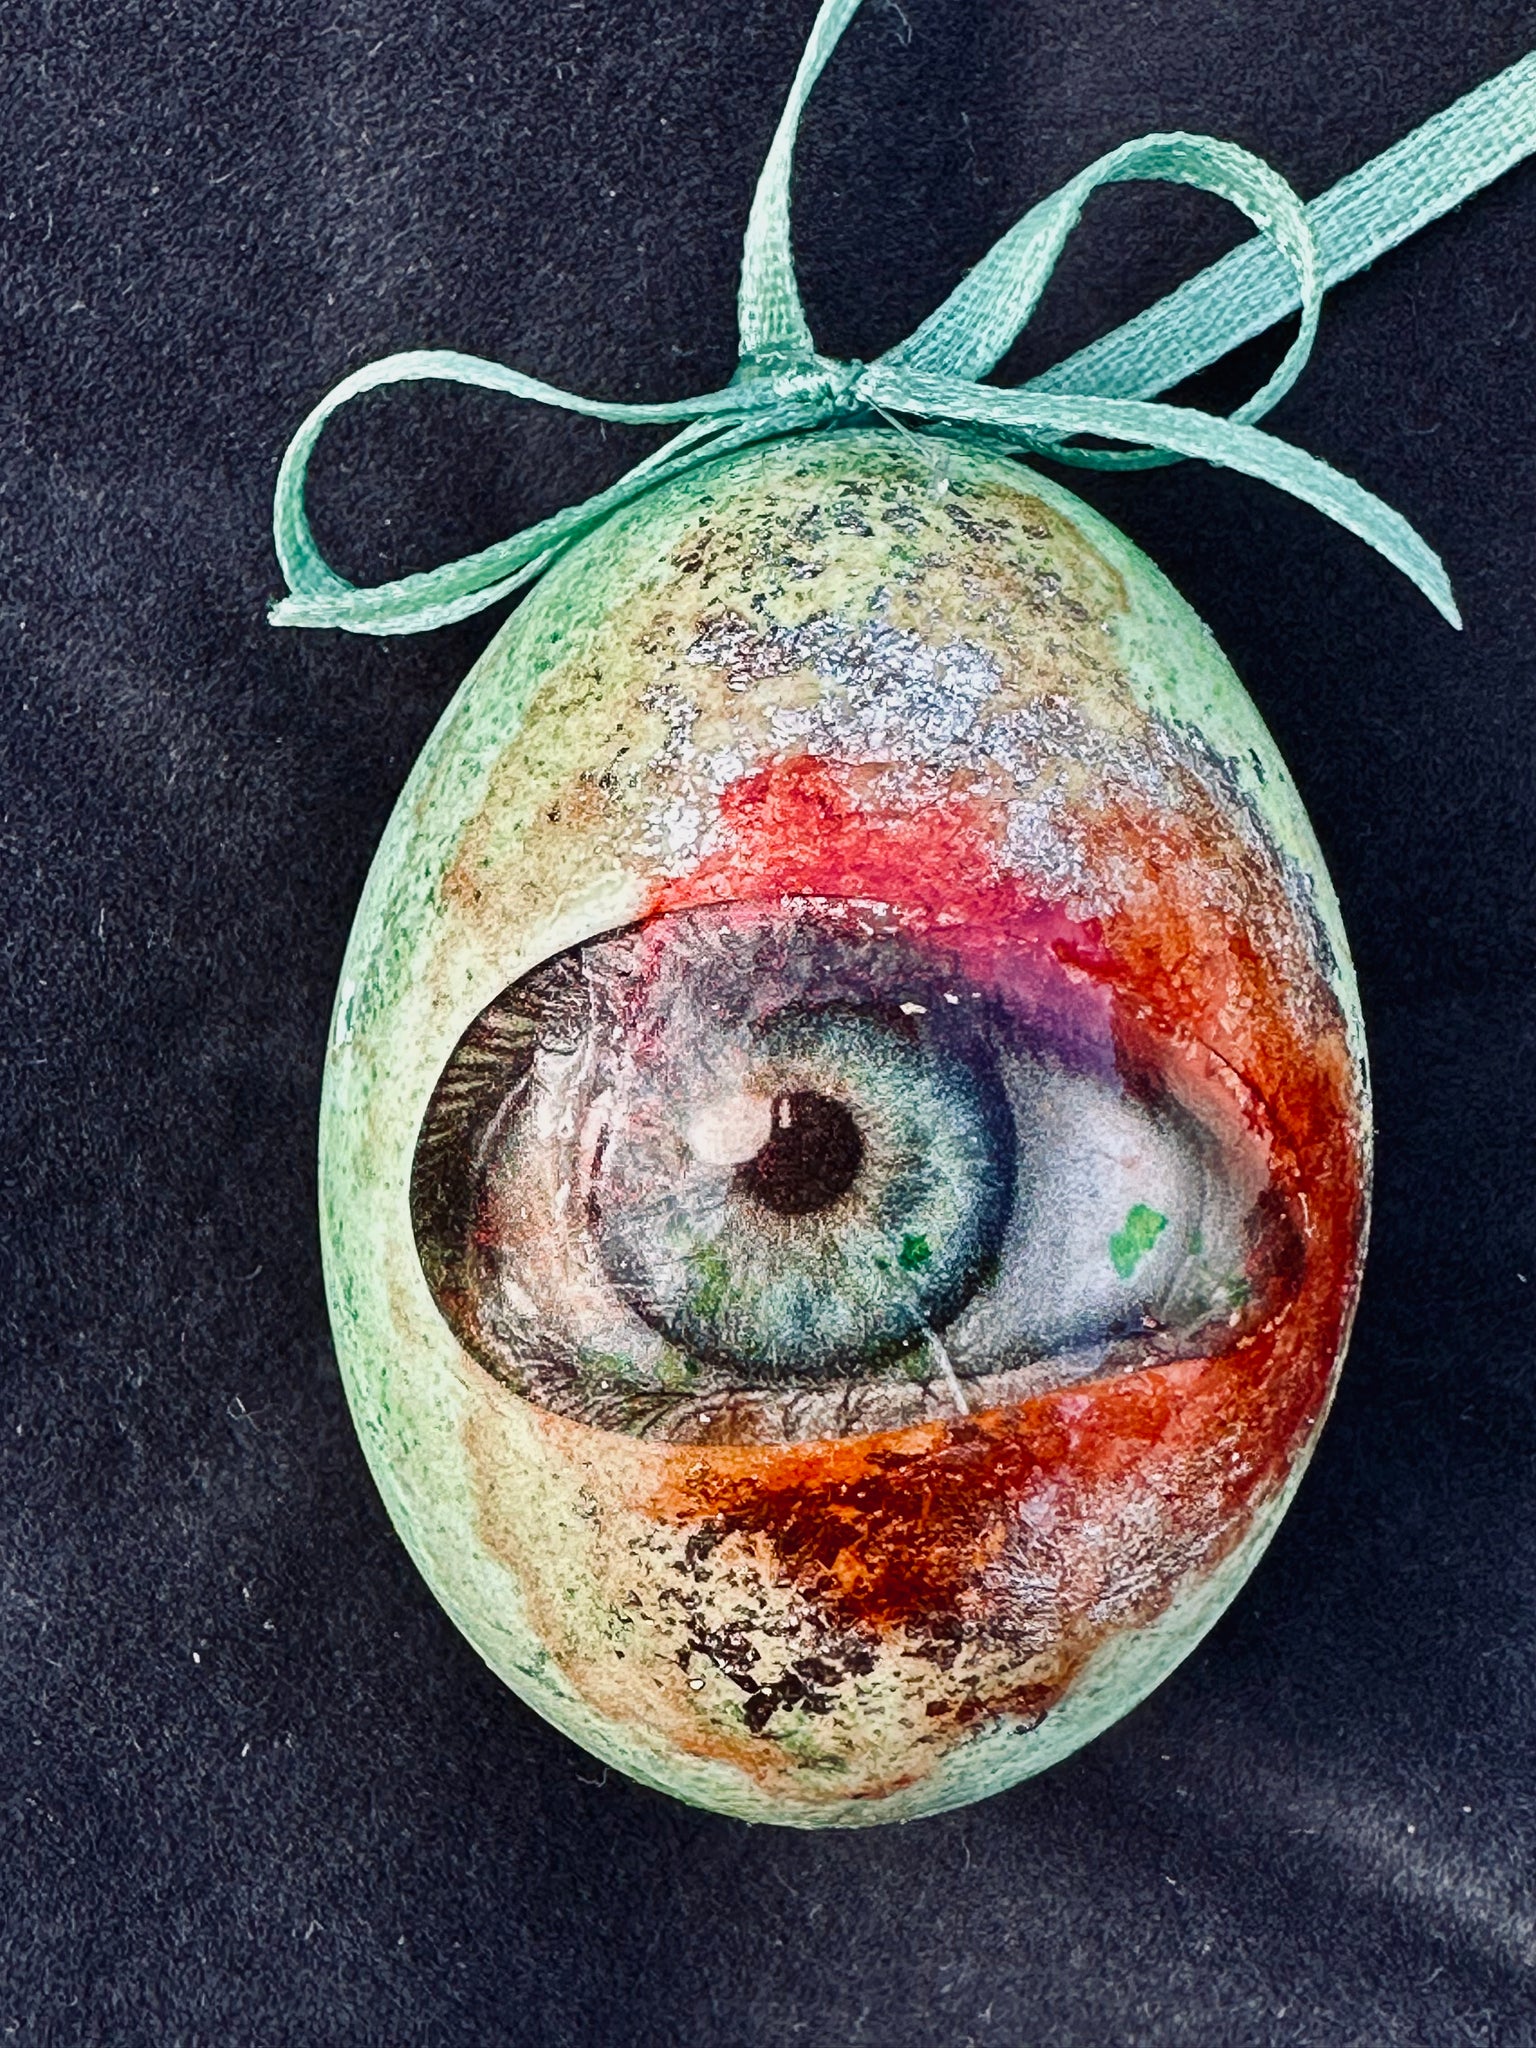 the Eye egg, hønseæg